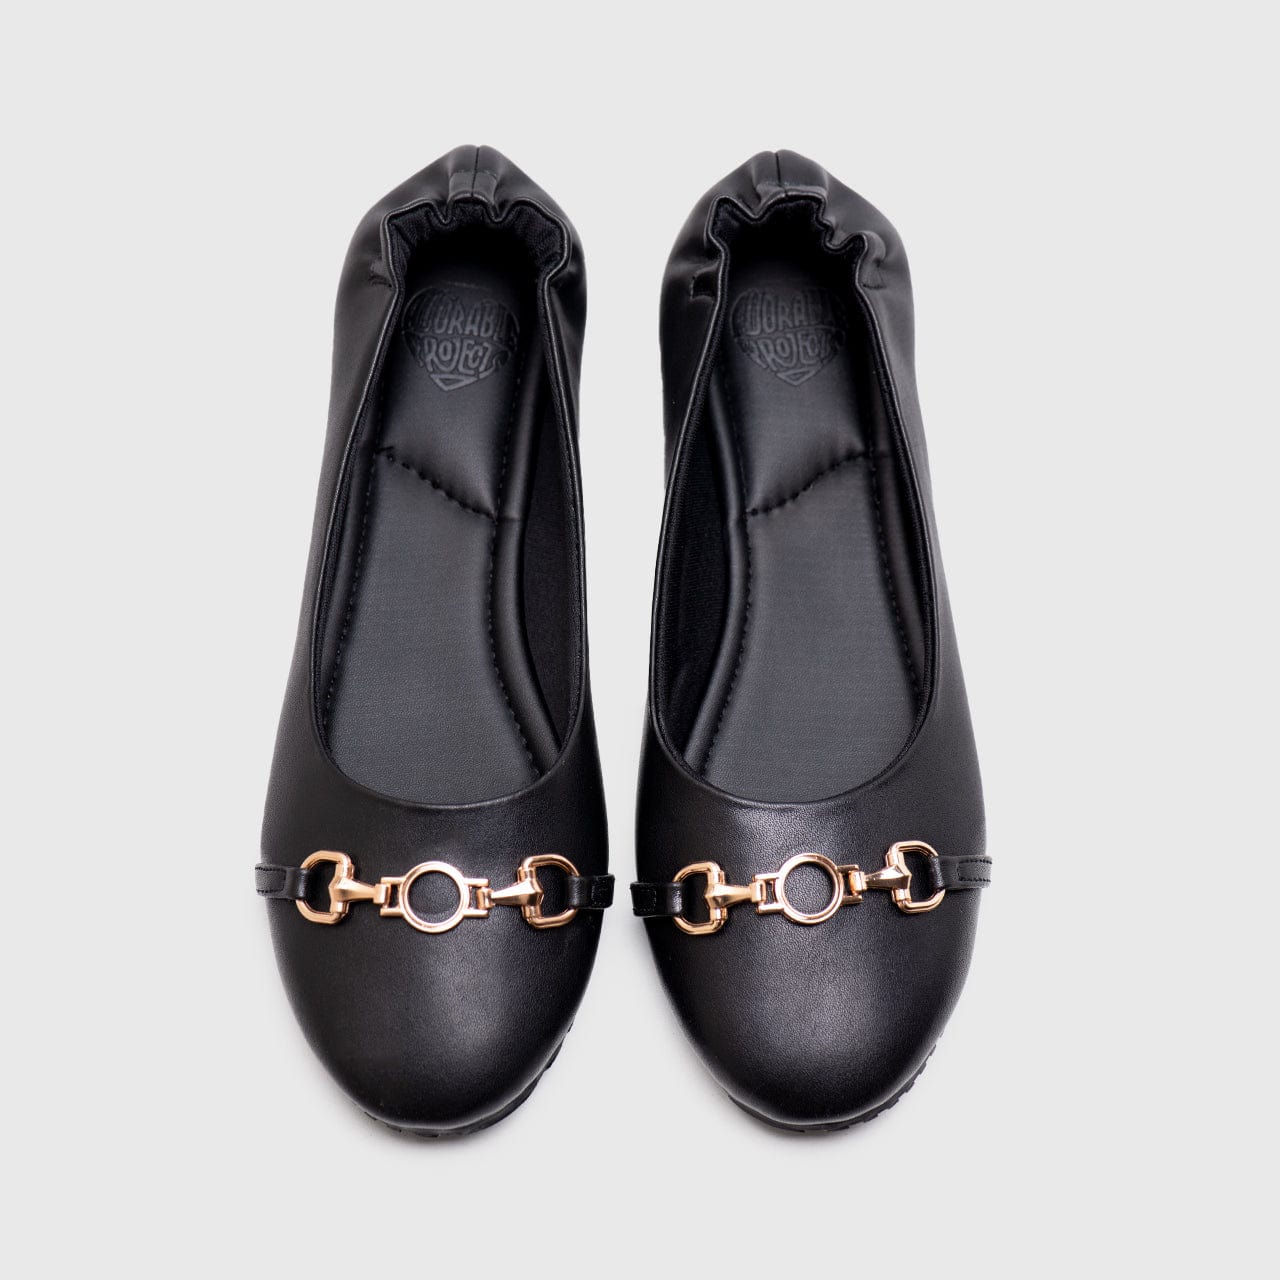 Adorable Projects Official Calluna Flat Shoes Black